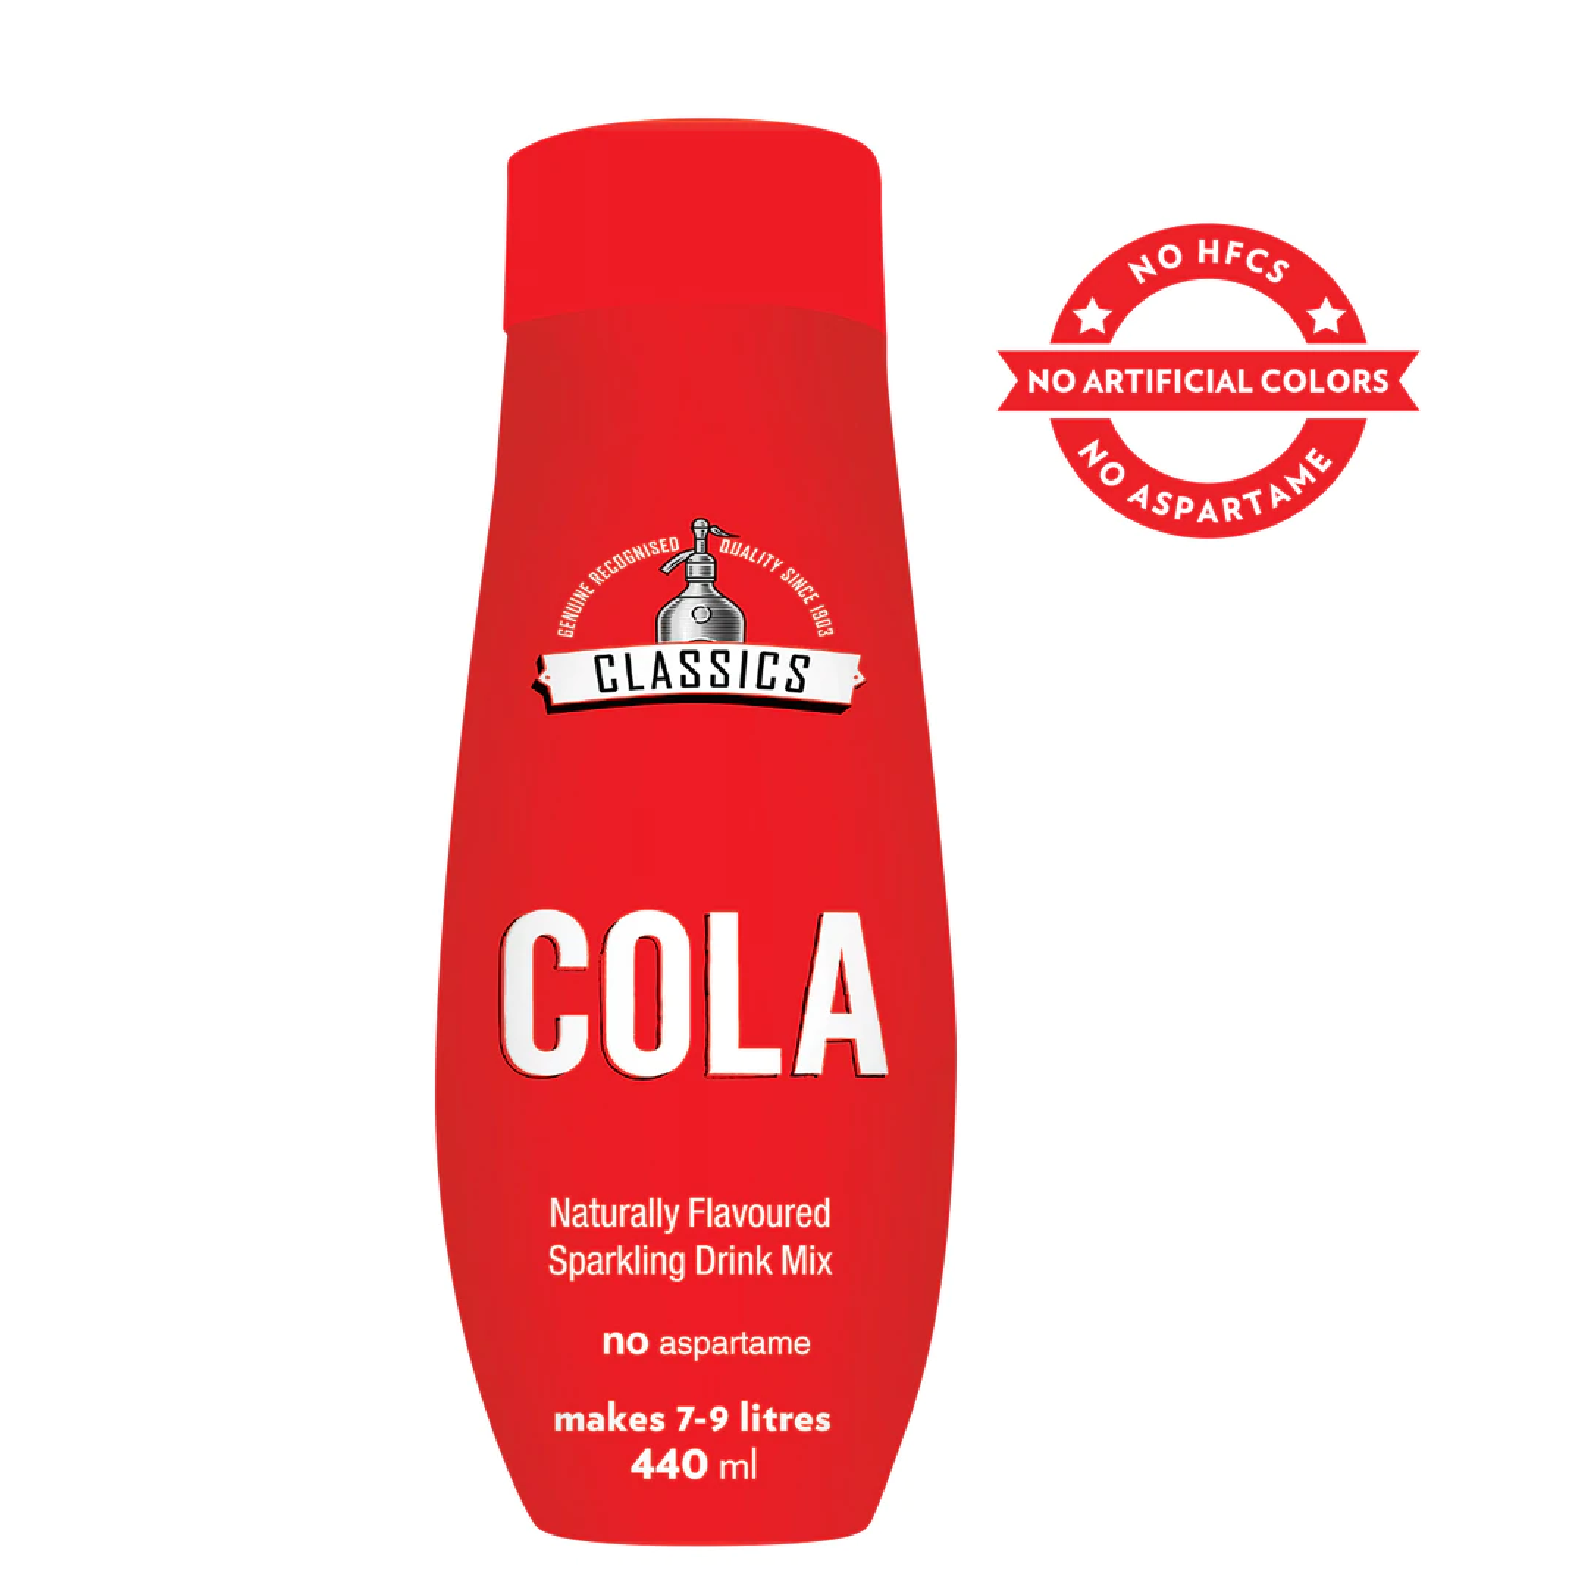 SODASTREAM Classics COLA Drink Mix